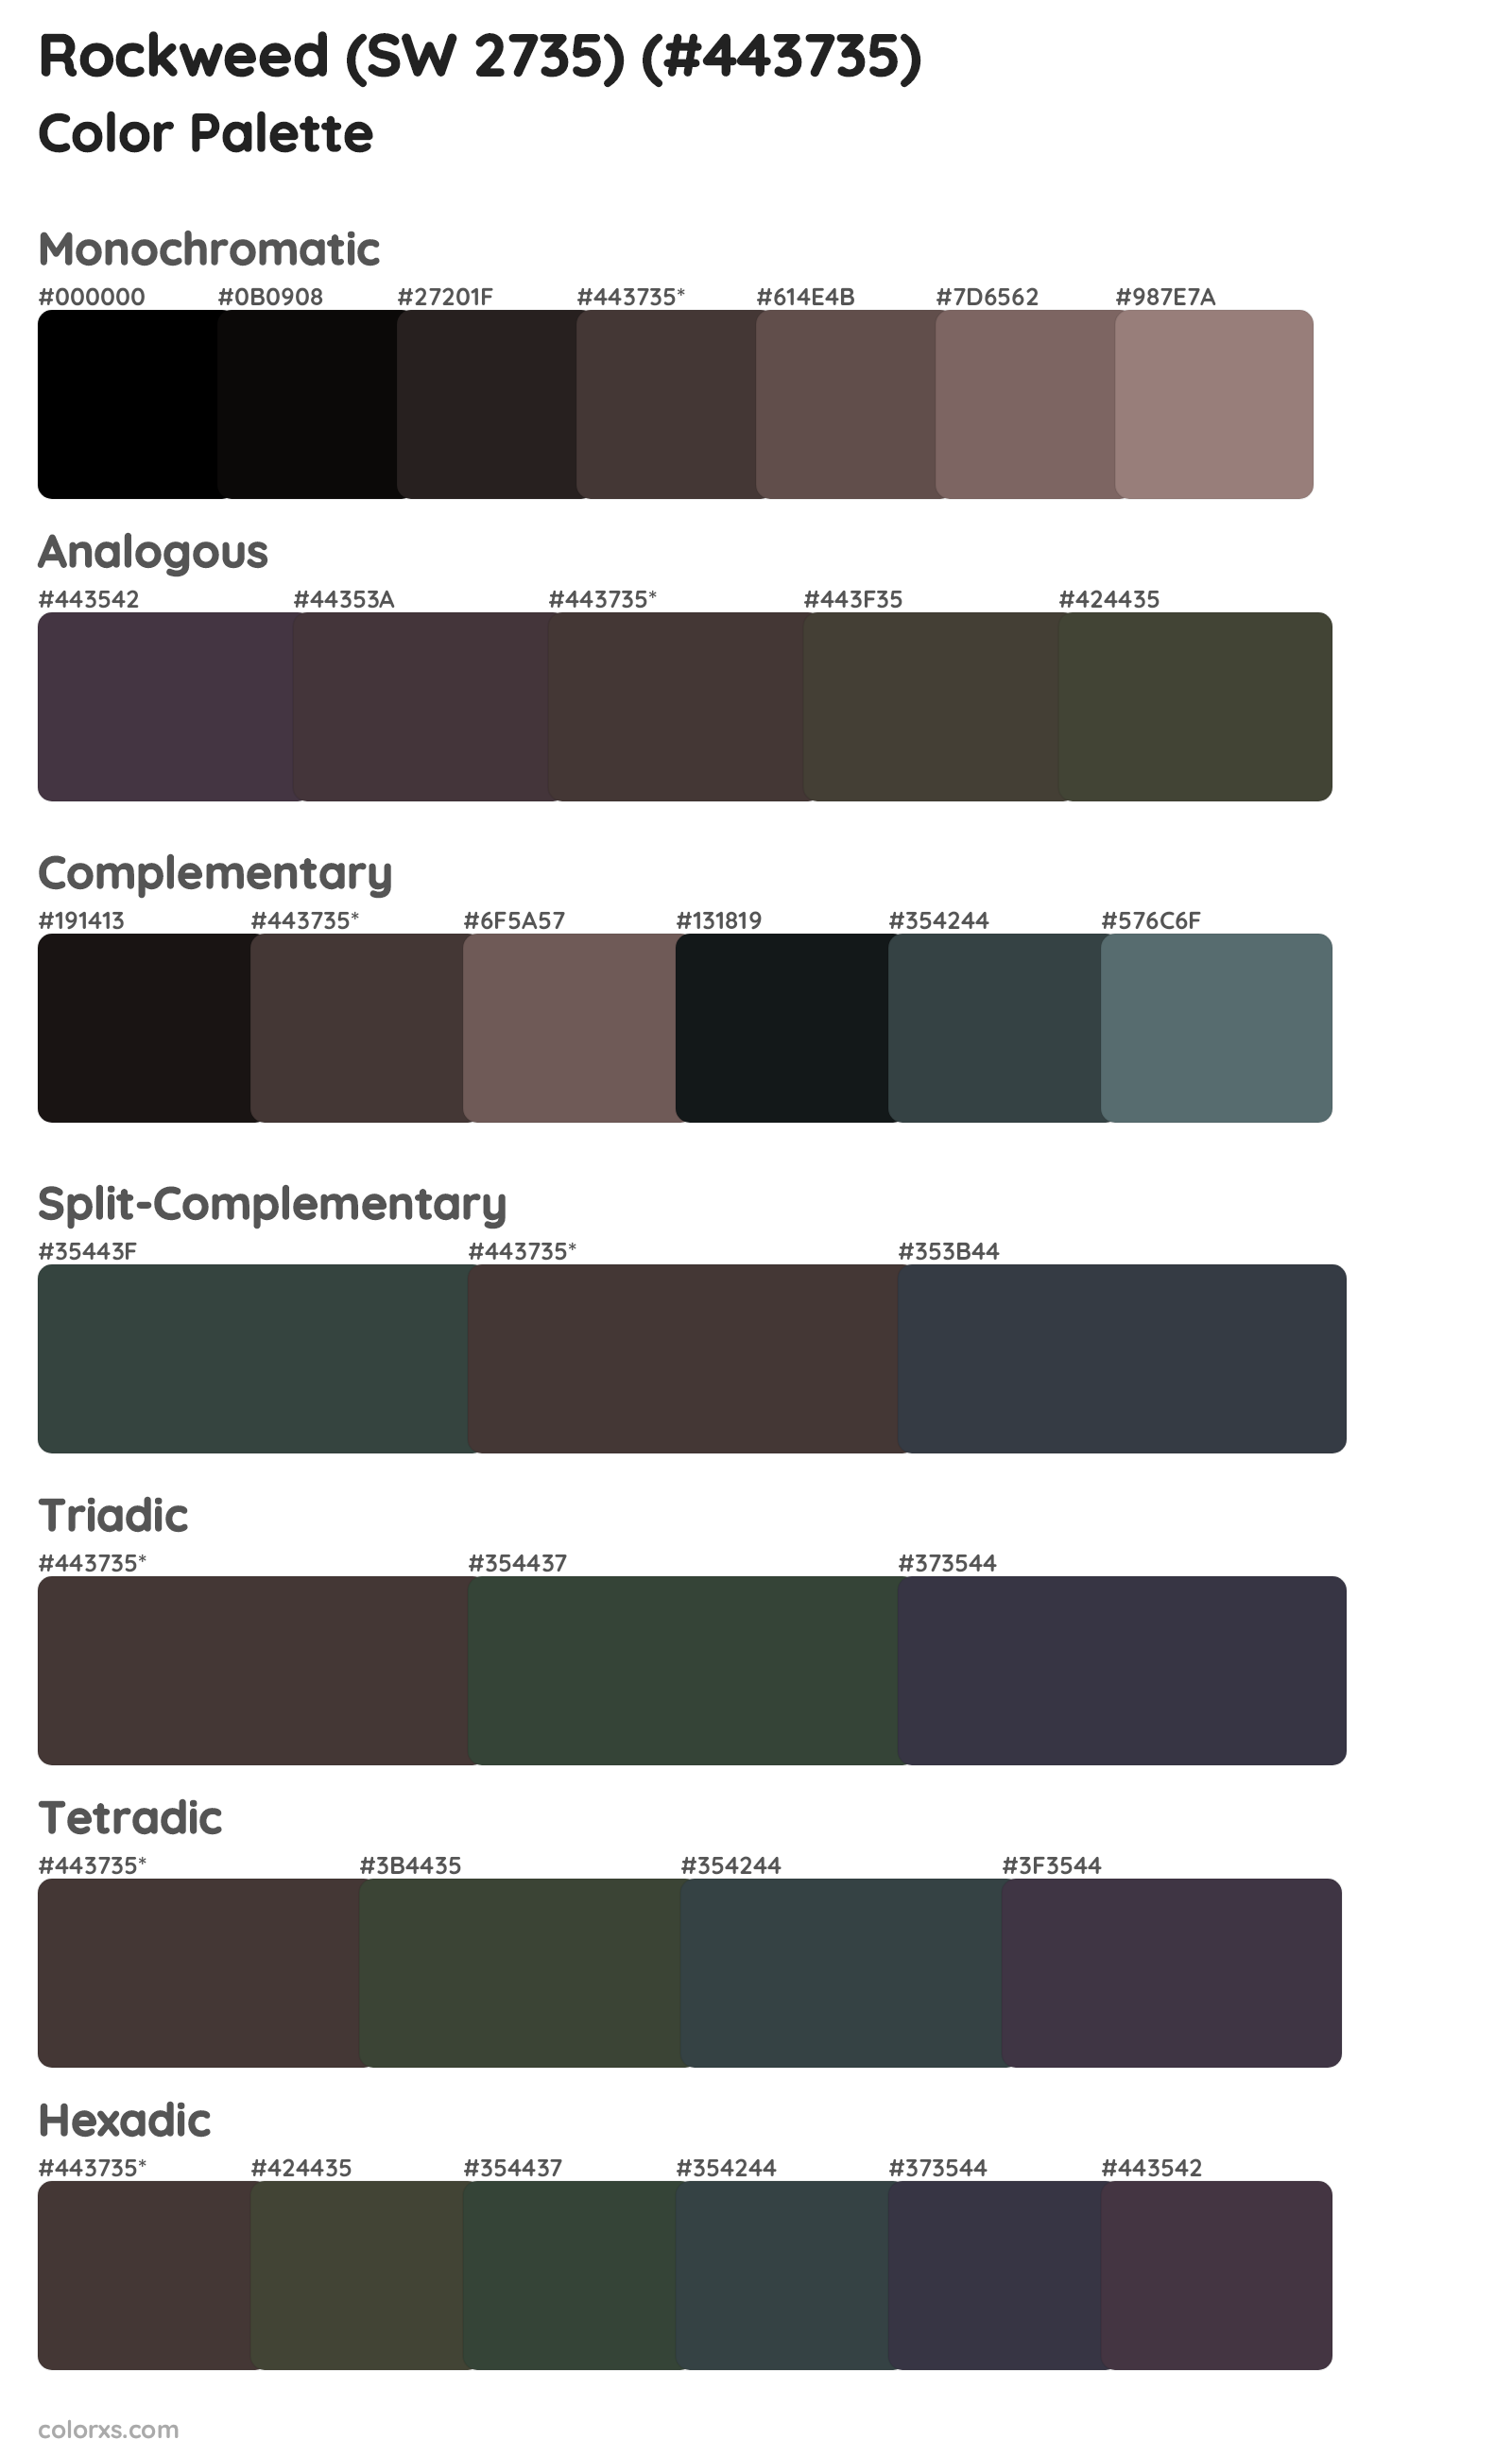 Rockweed (SW 2735) Color Scheme Palettes